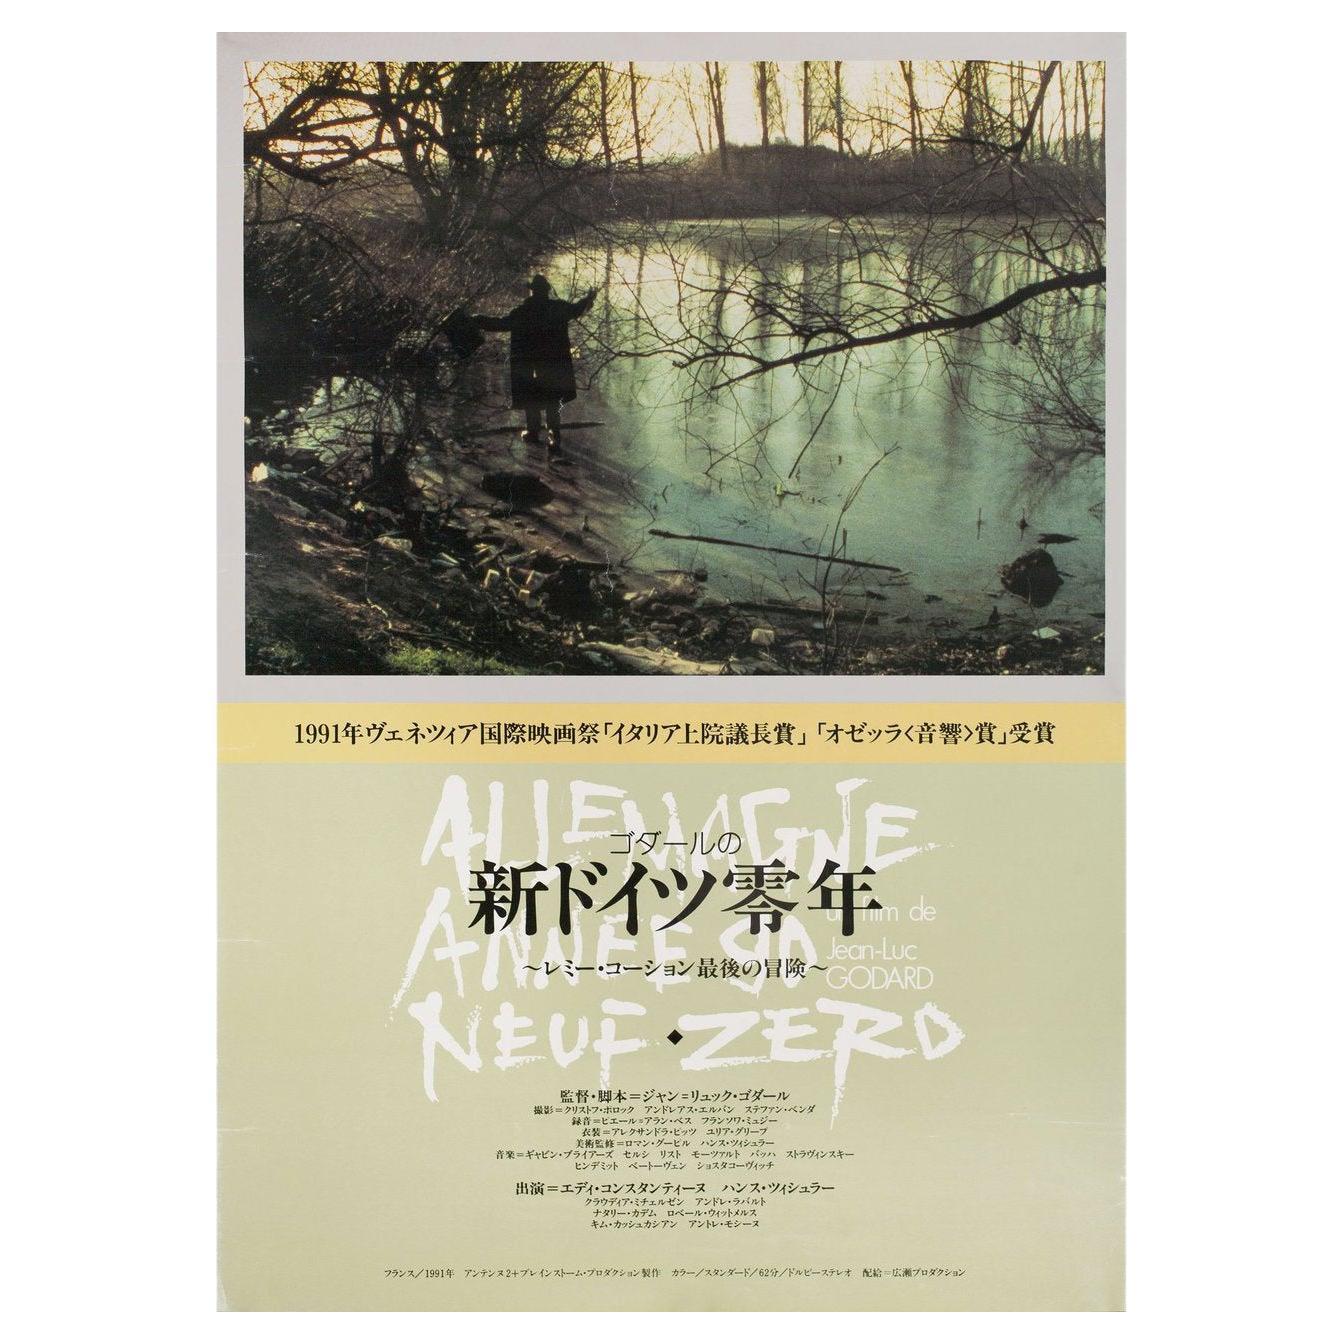 Allemagne Année 90 Neuf Zéro 1991 Affiche du film japonais B2